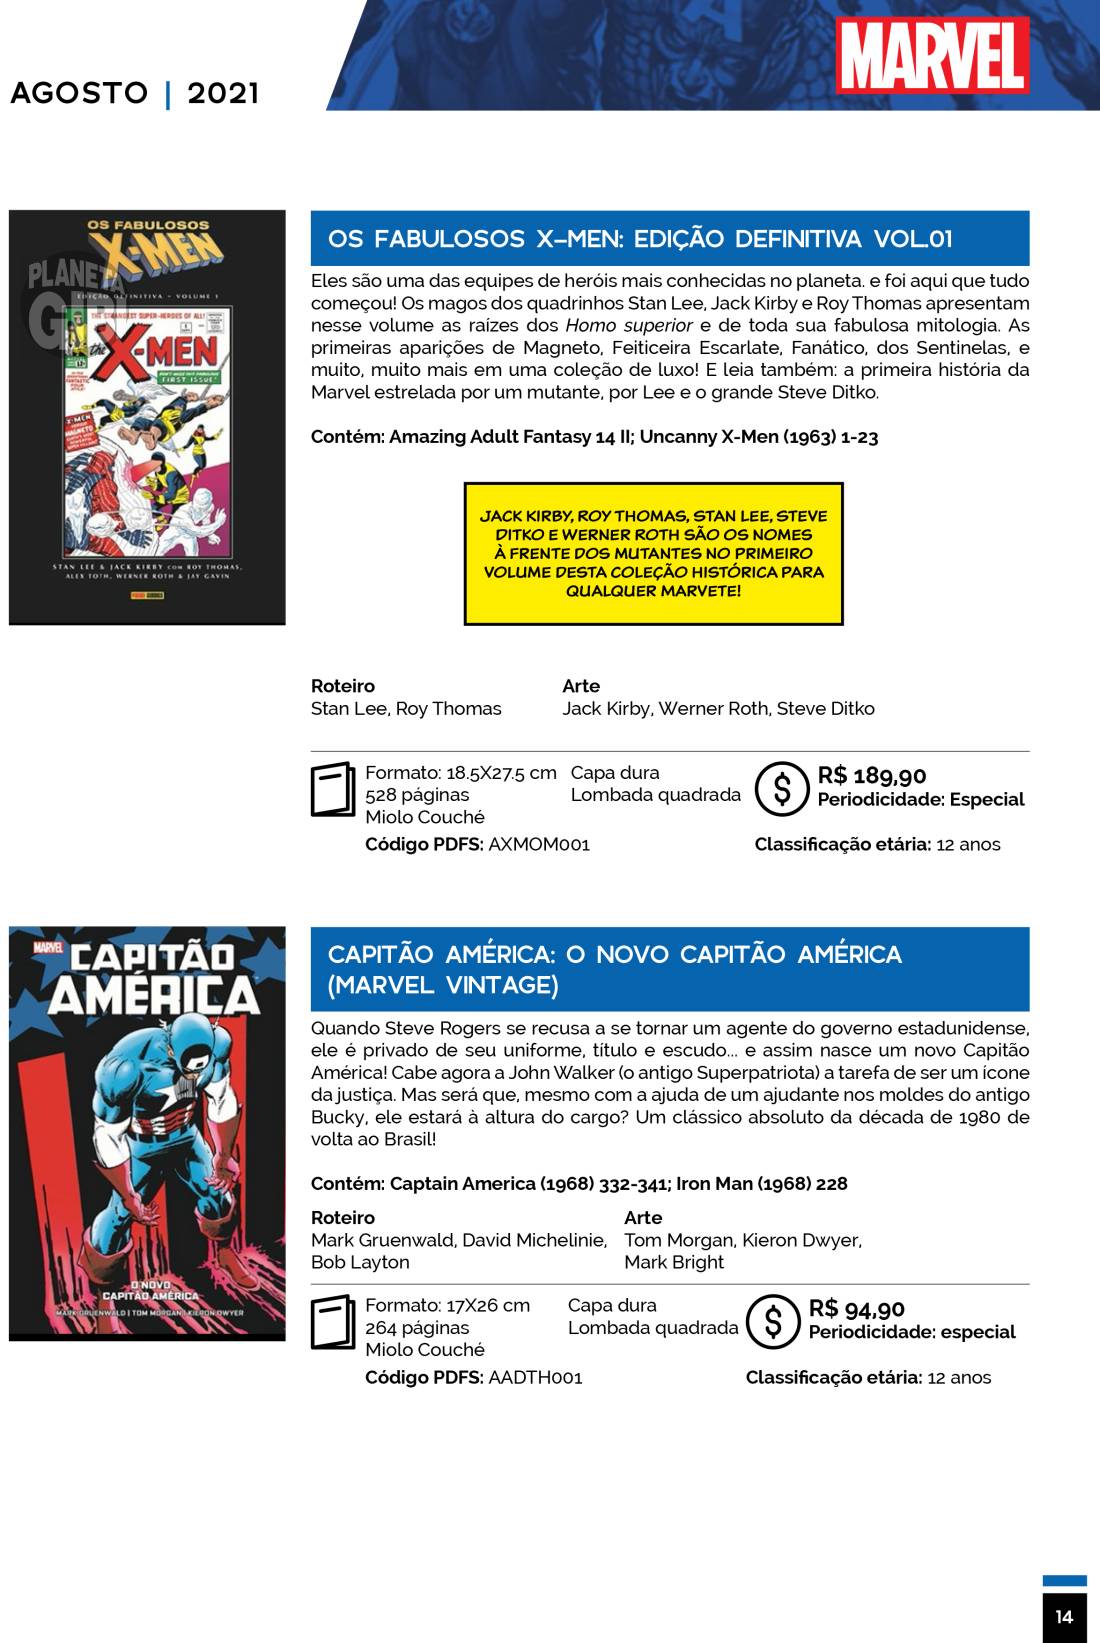 14 - Checklist Marvel/Panini (Julho/2020 - pág.09) - Página 9 Catalogo-Julho-Agosto-14